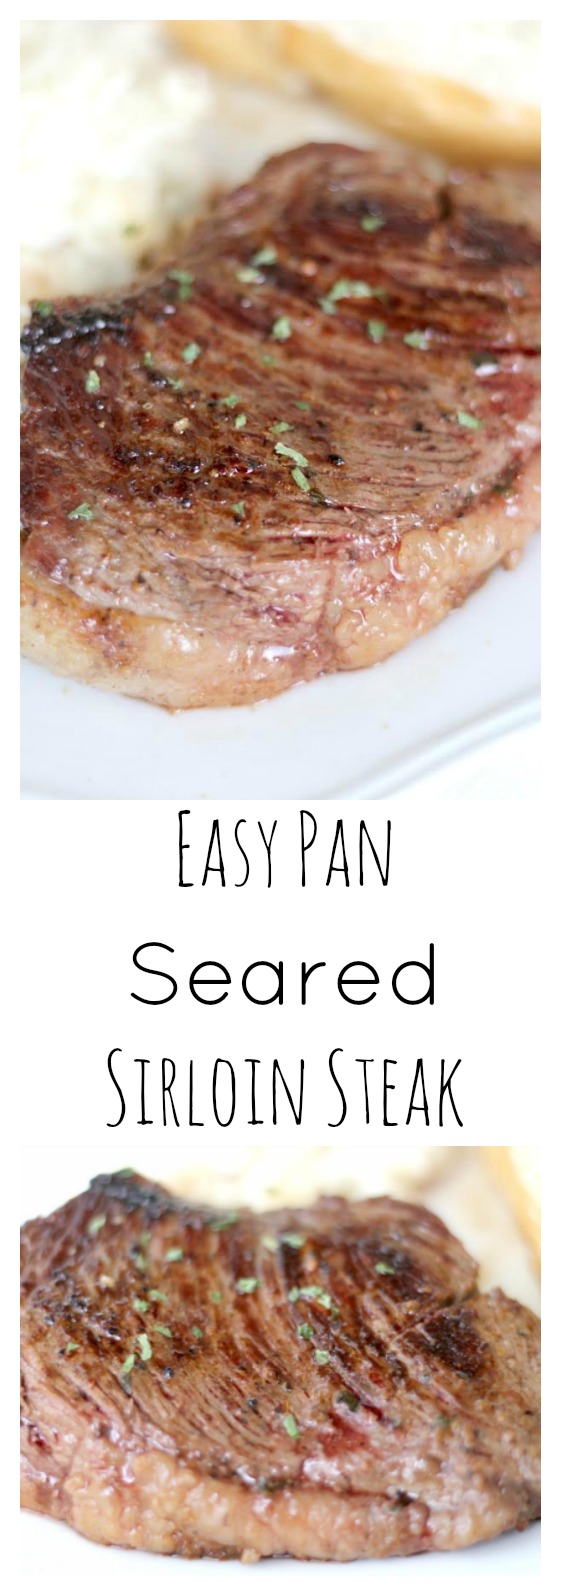 easy-pan-seared-sirloin-steak-final